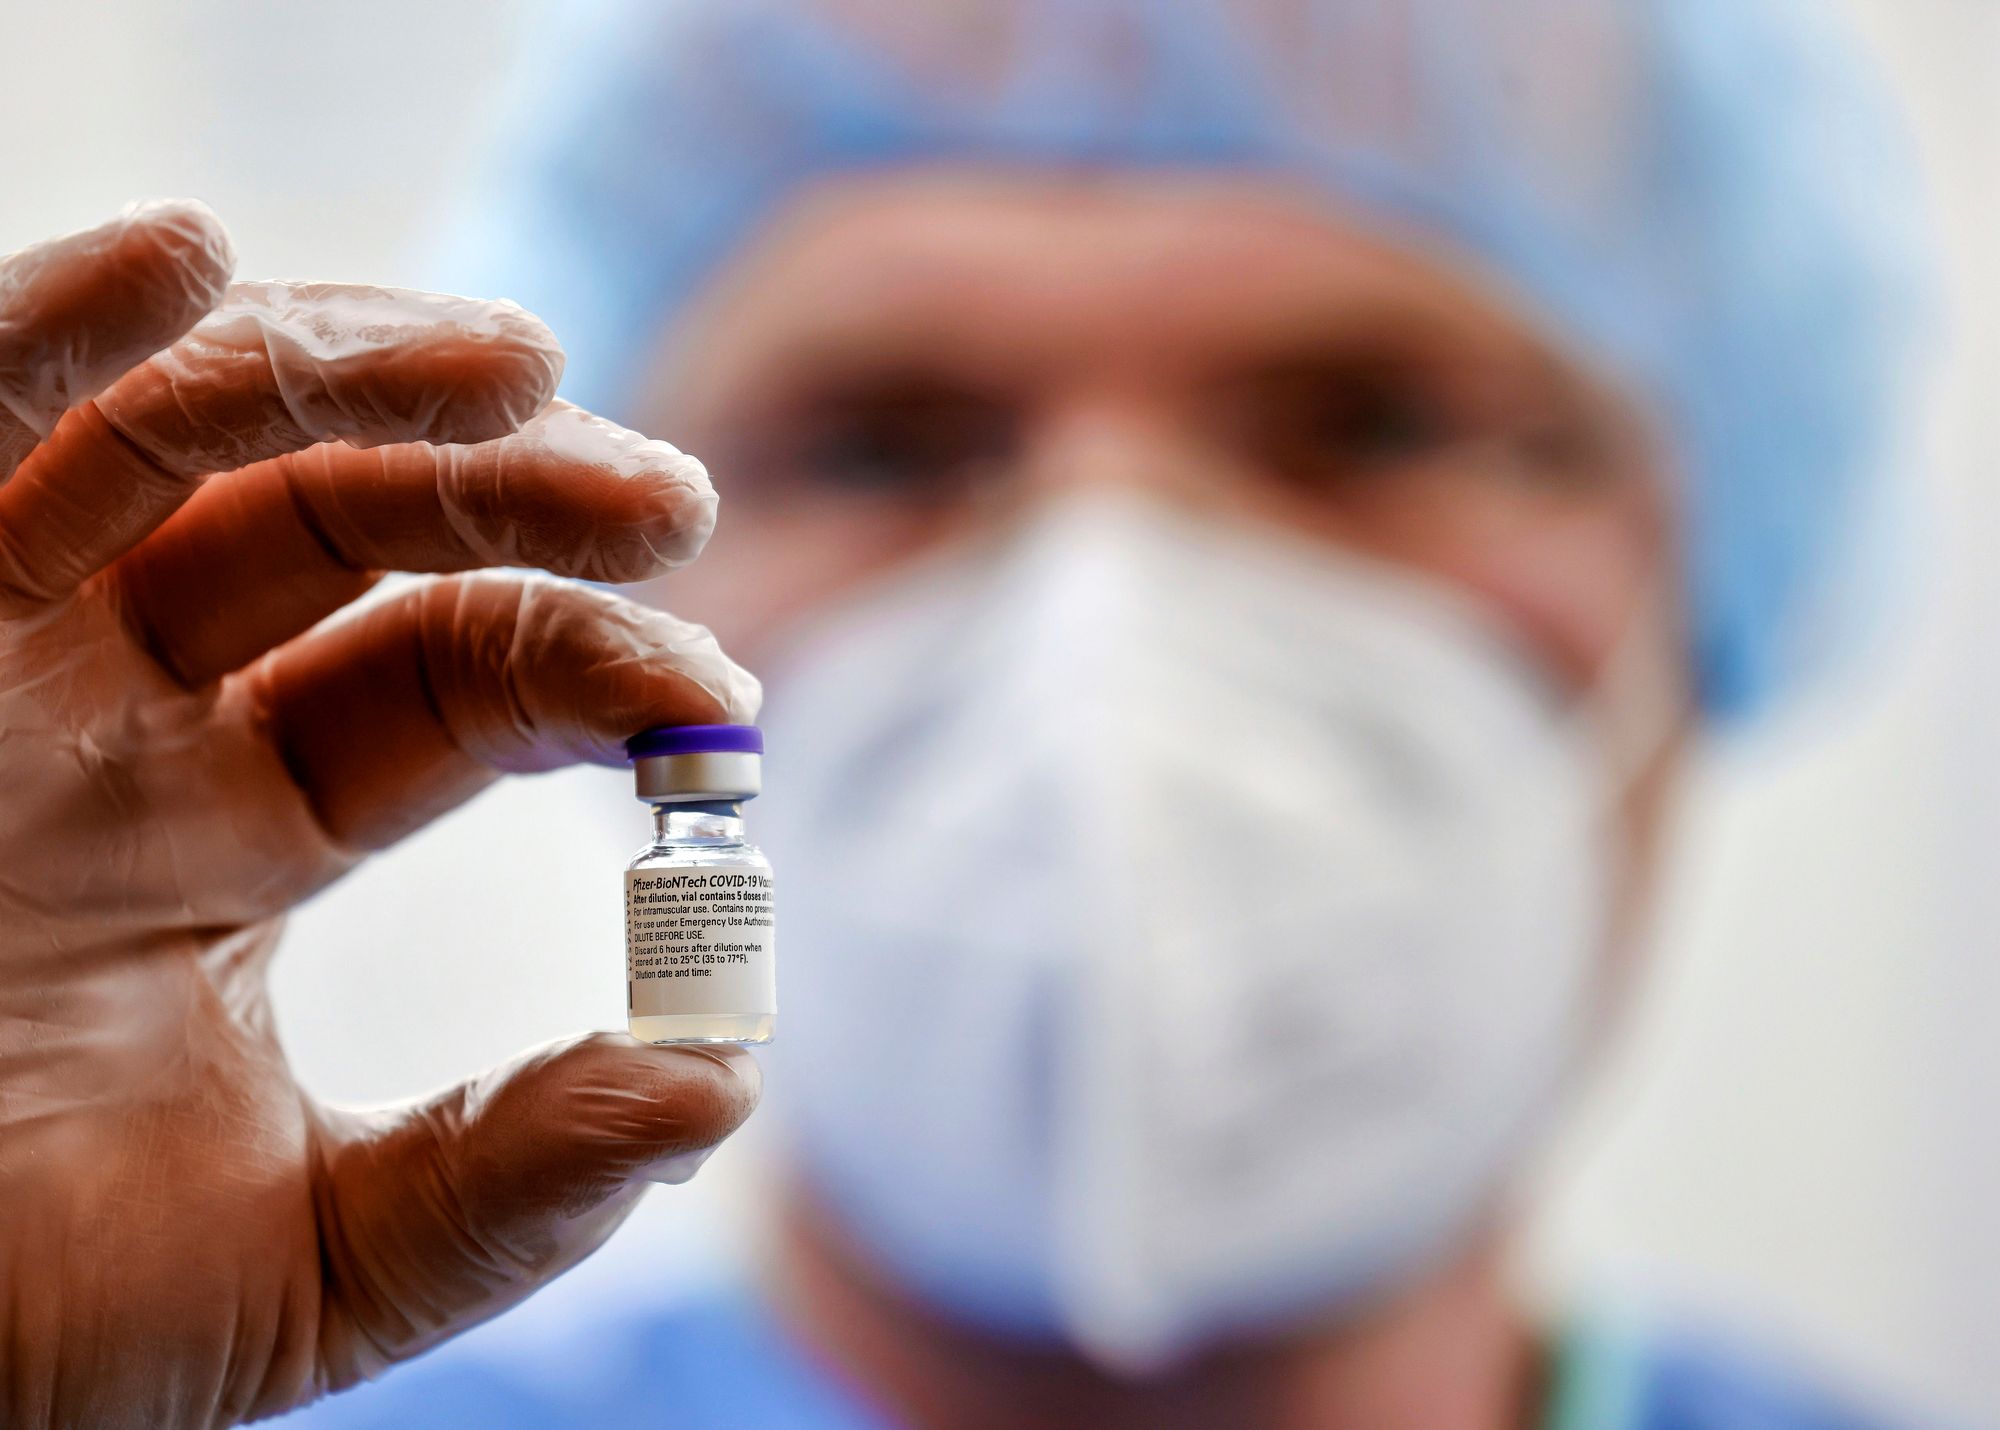 Epäselvyydet eivät tarkoita sitä, että Biontech-Pfizerin rokote olisi vaarallinen. © Rupert Oberhäuser / Mauritius Images / Lehtikuva